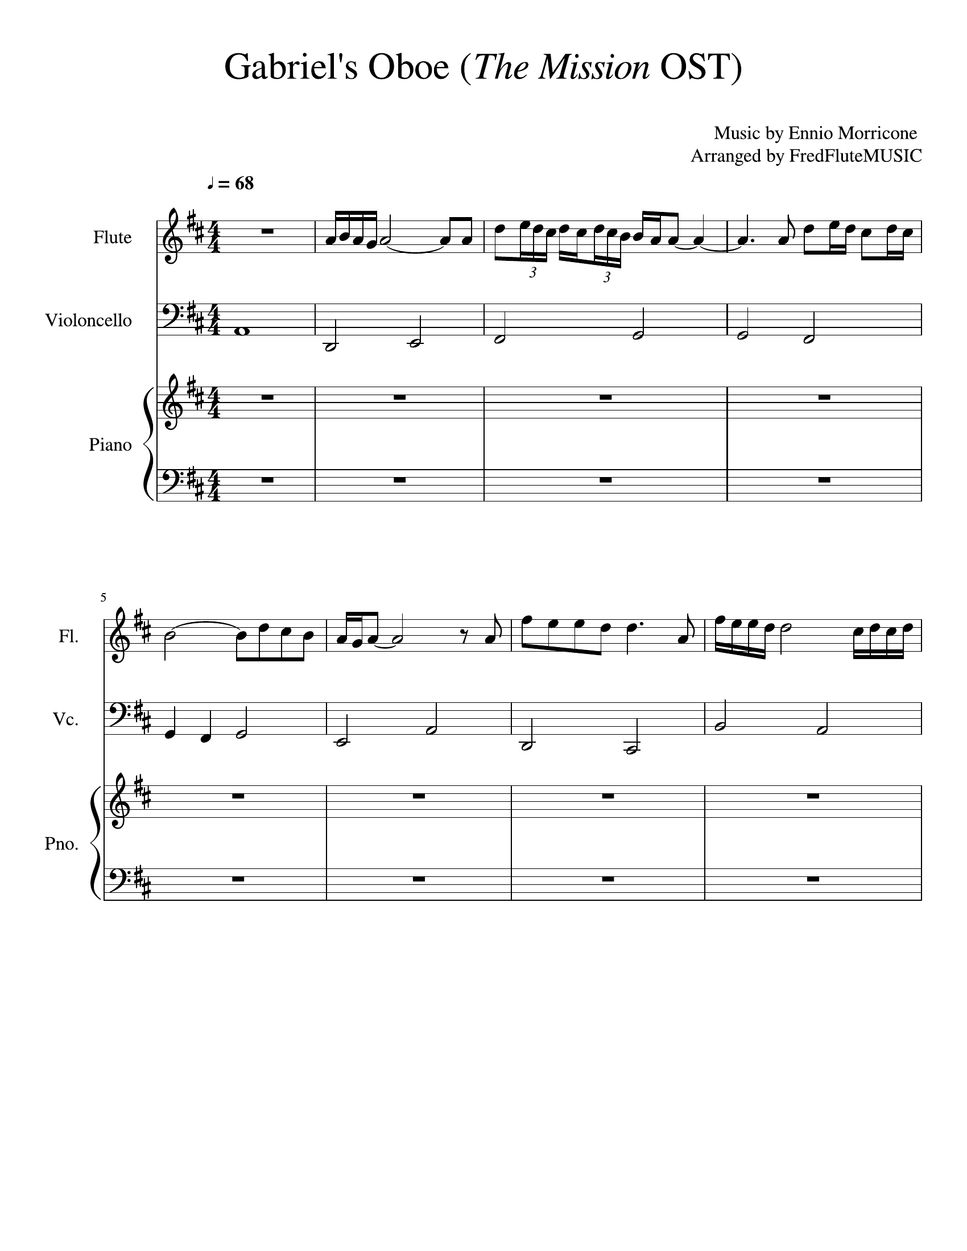 Ennio Morricone - Gabriel's Oboe - Piano, Flute, Cello (Flute, Cello, Piano Trio) by FredFluteMUSIC